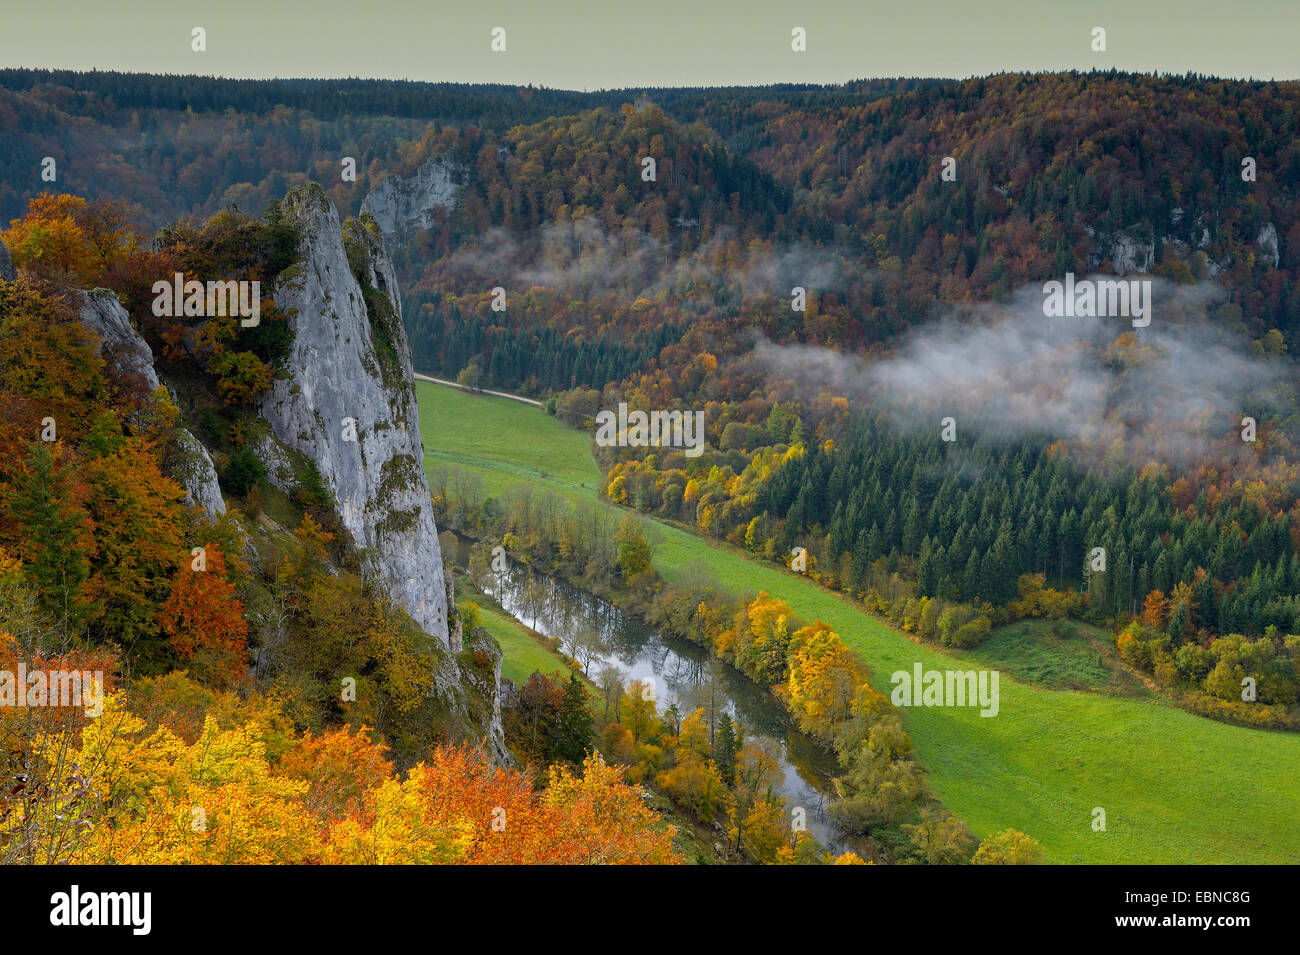 Stiegelesfels la réserve naturelle à la haute vallée du Danube à l'automne, l'Allemagne, Bade-Wurtemberg, Jura Souabe Banque D'Images